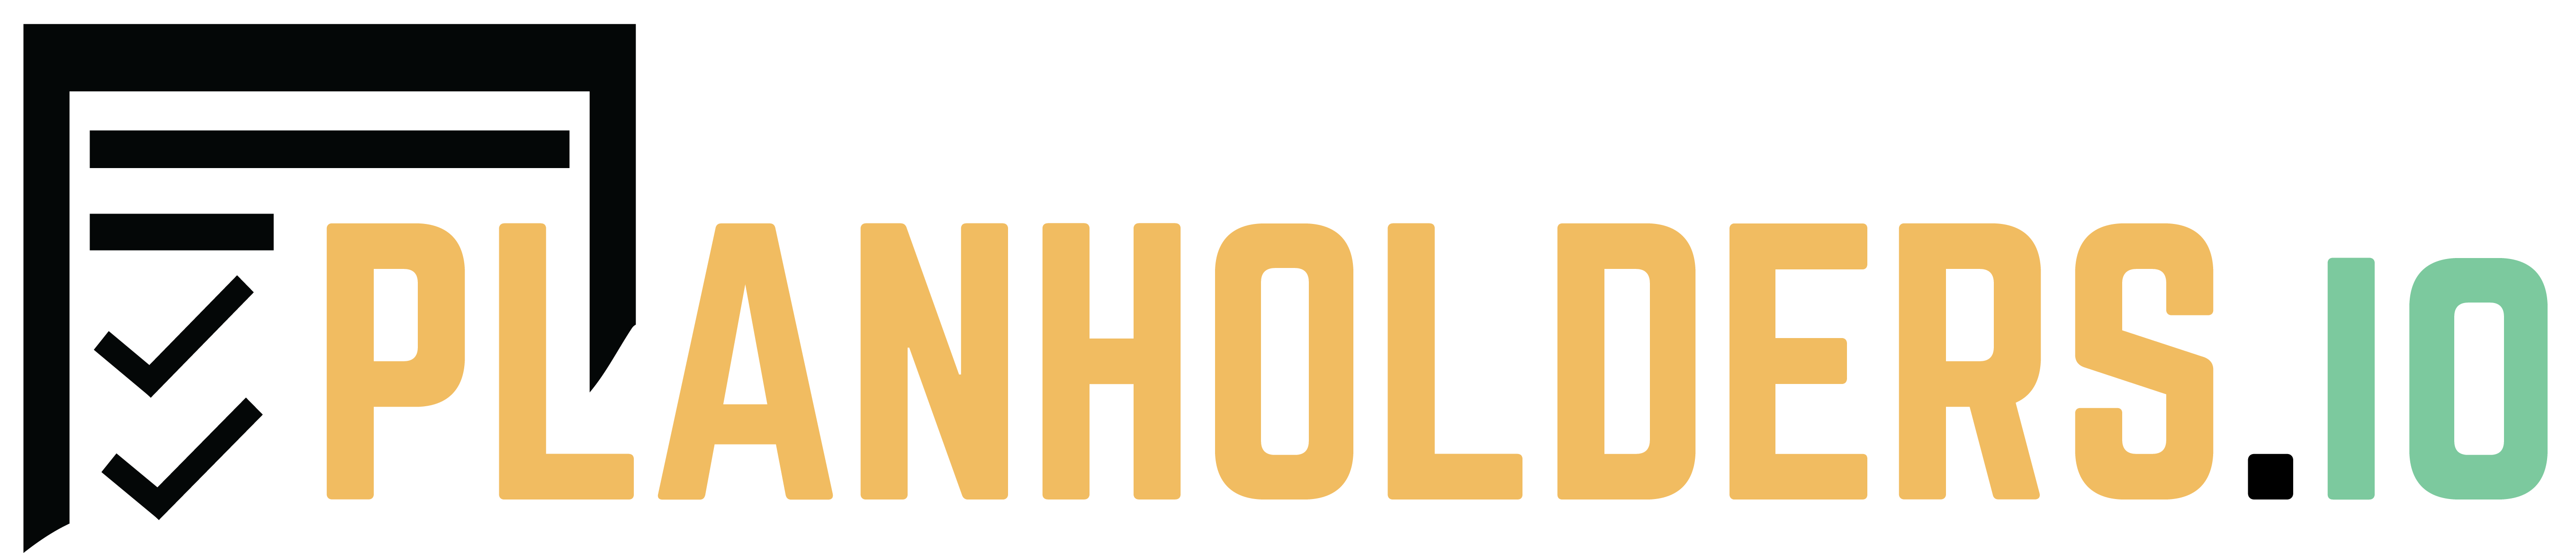 Planholders Logo